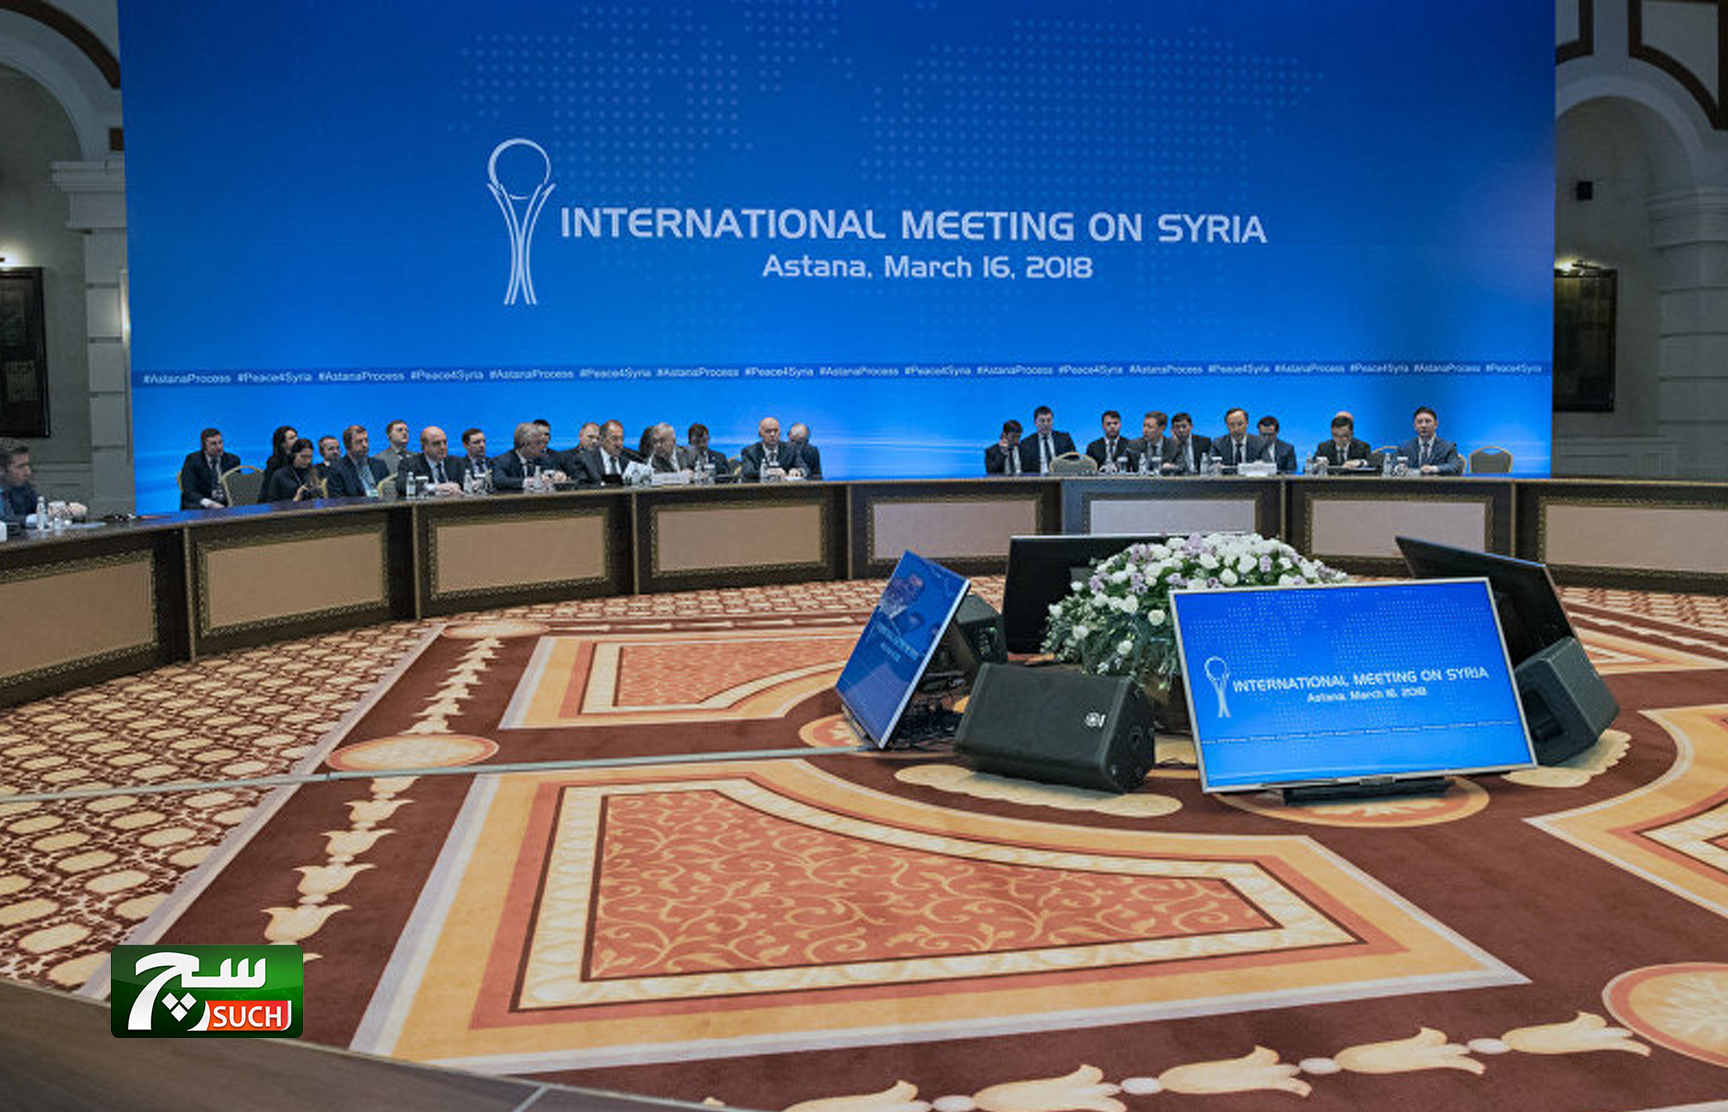 عقد جولة جديدة لمفاوضات أستانا حول سوريا في مارس المقبل